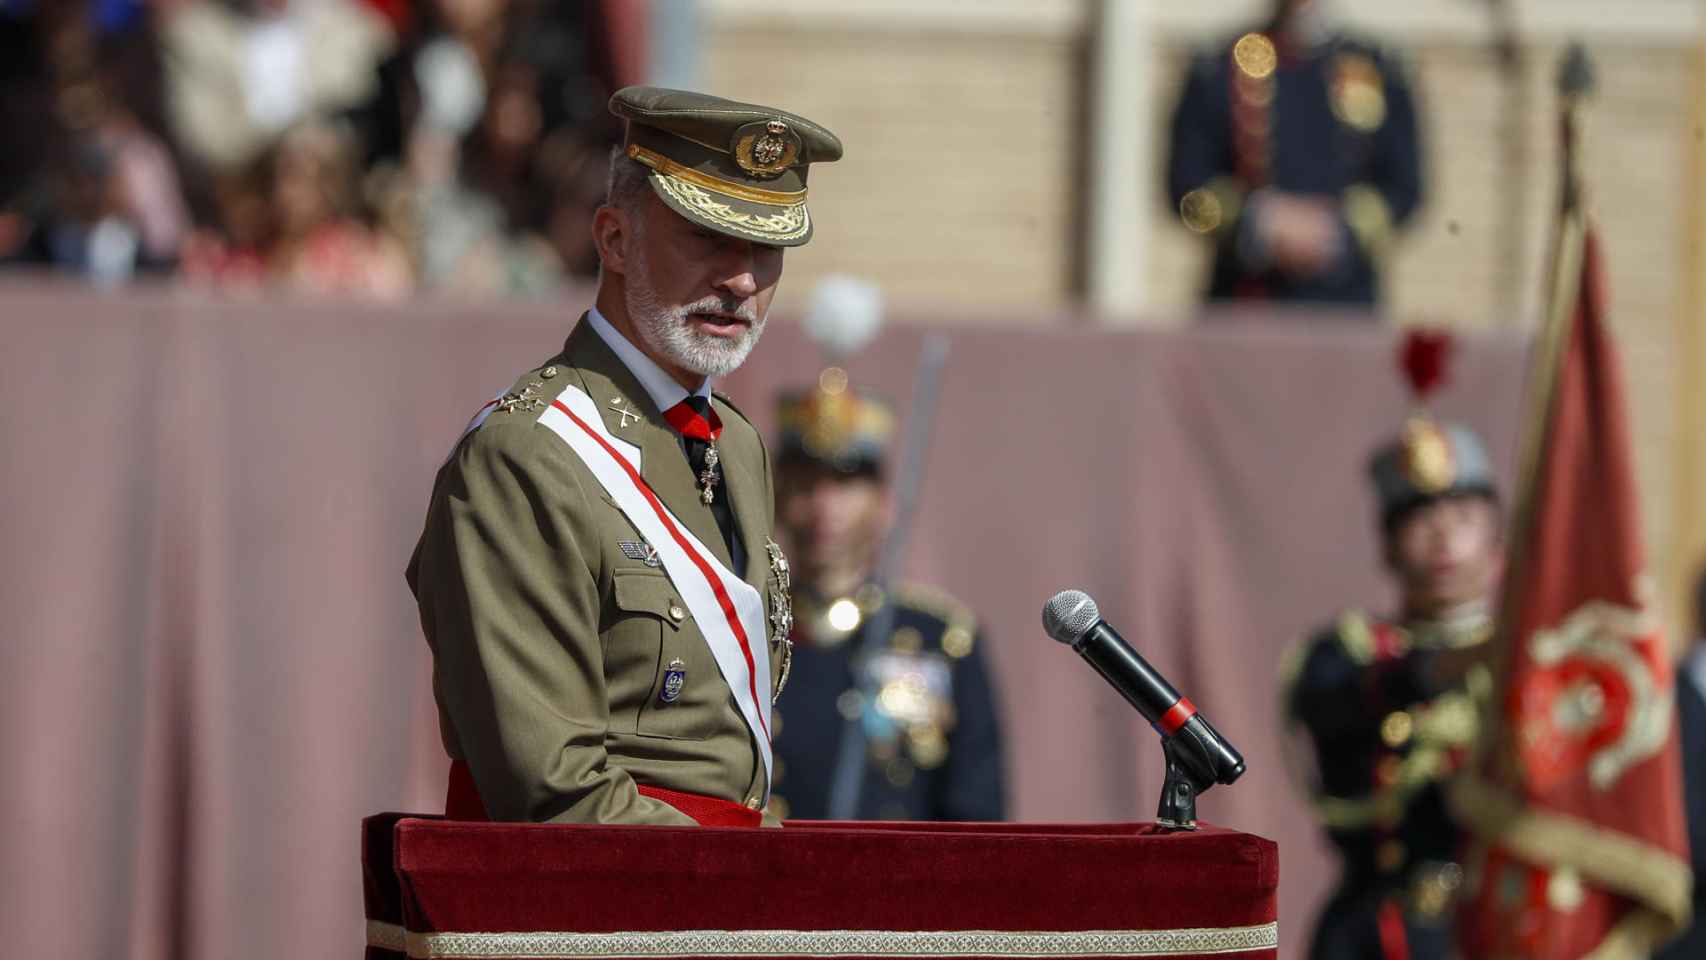 El rey Felipe VI pronuncia su discurso durante la Jura de Bandera de la princesa Leonor.